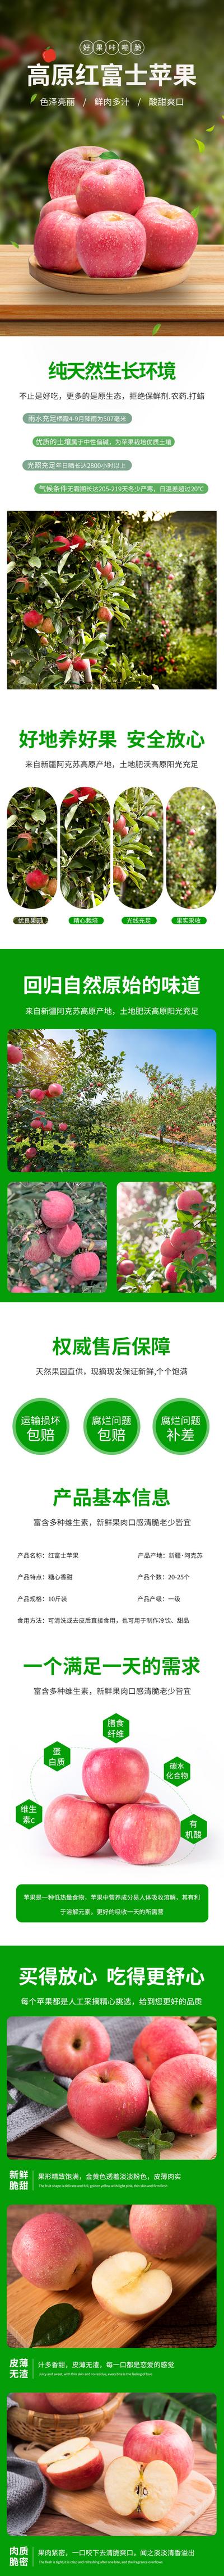 【南门网】广告 海报 电商 苹果 详情页 水果 红富士